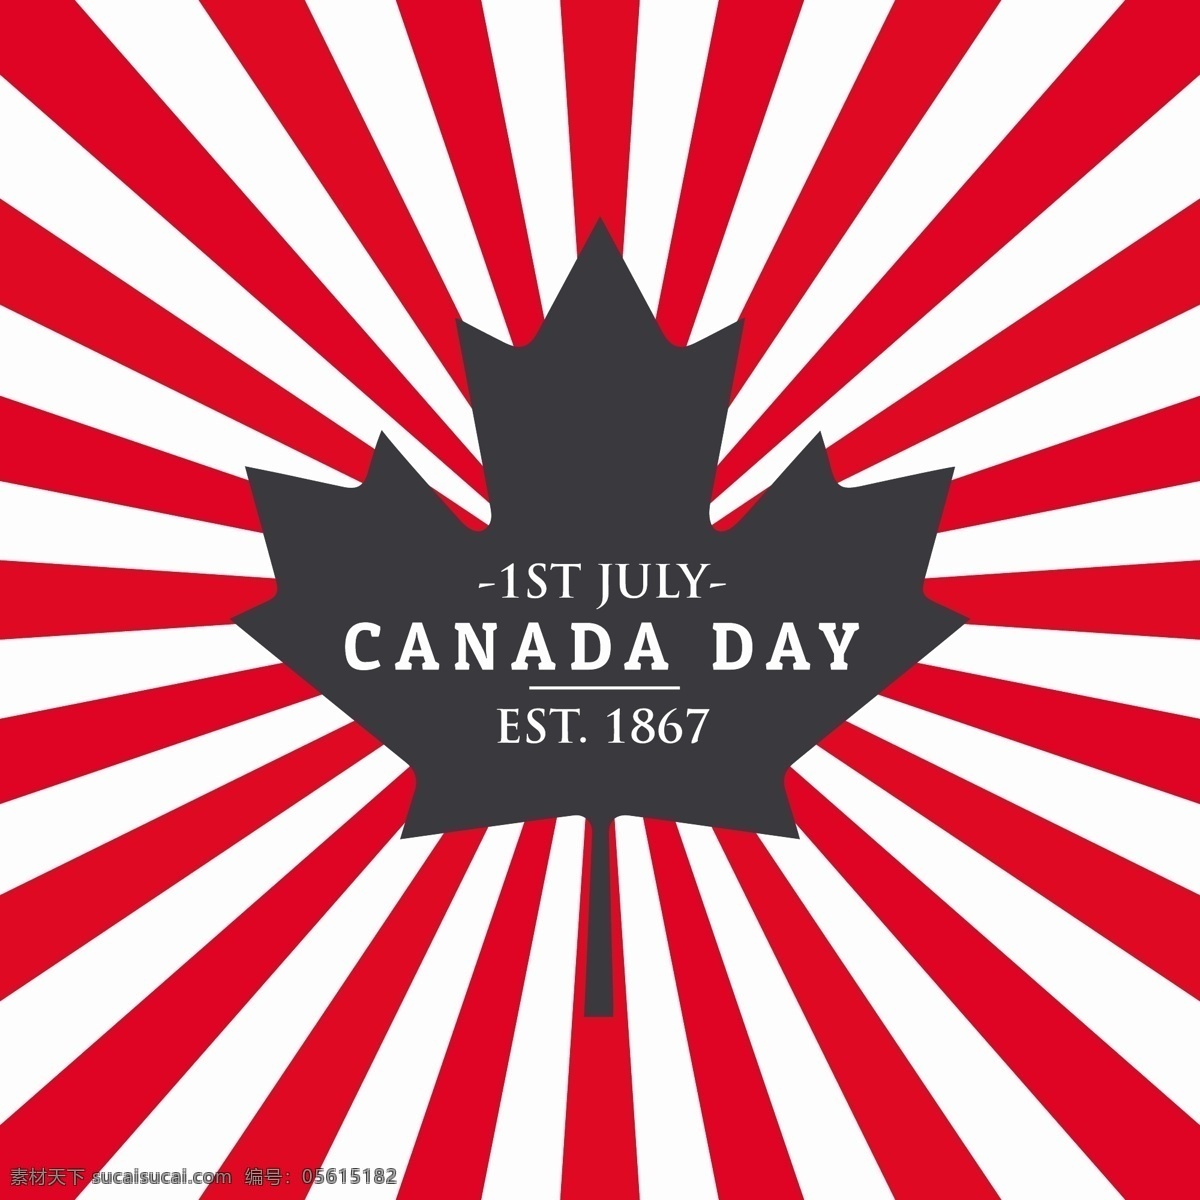 加拿大 日 问候 背景 国旗 叶 快乐 红色 壁纸 庆祝 节日 历史 国家 爱国 独立 第一 纪念 七月